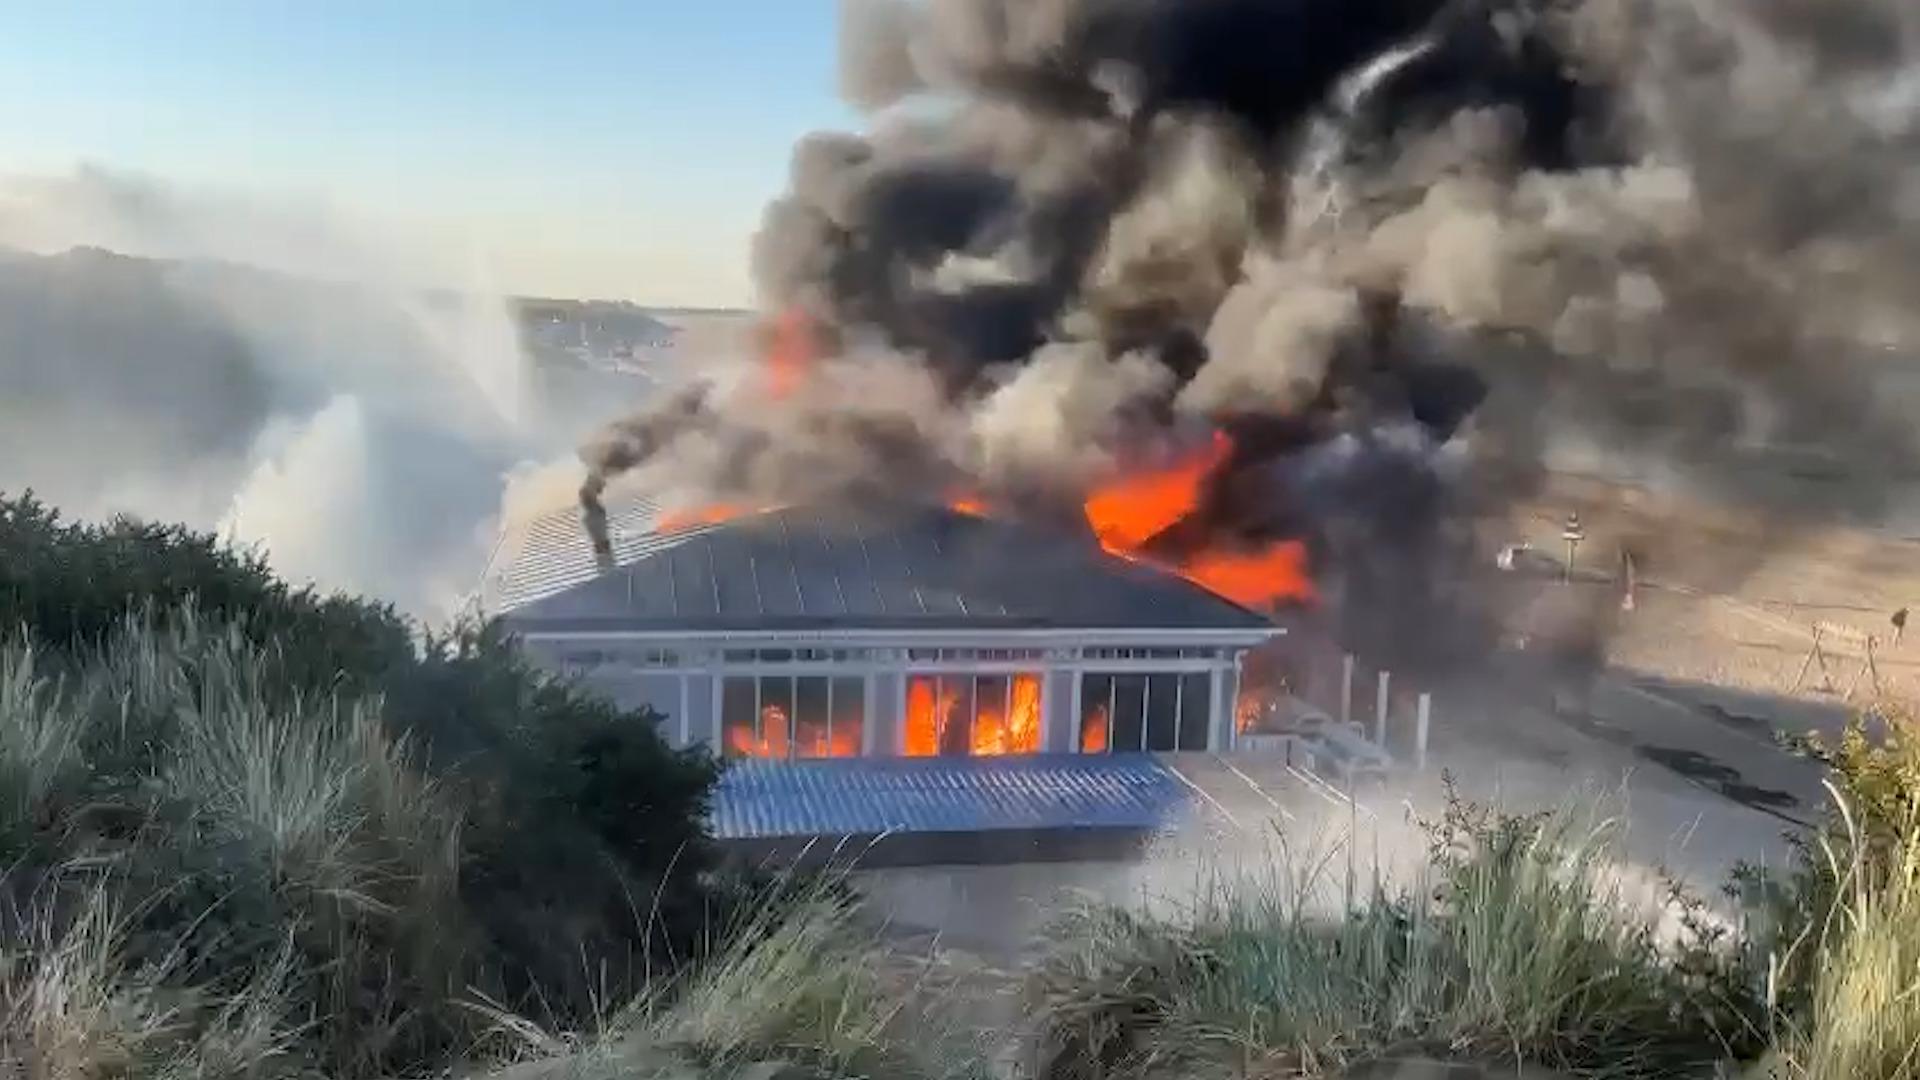 wolf Trechter webspin ik betwijfel het Beelden: vlammen slaan uit strandtent Rockanje | Video | Telegraaf.nl